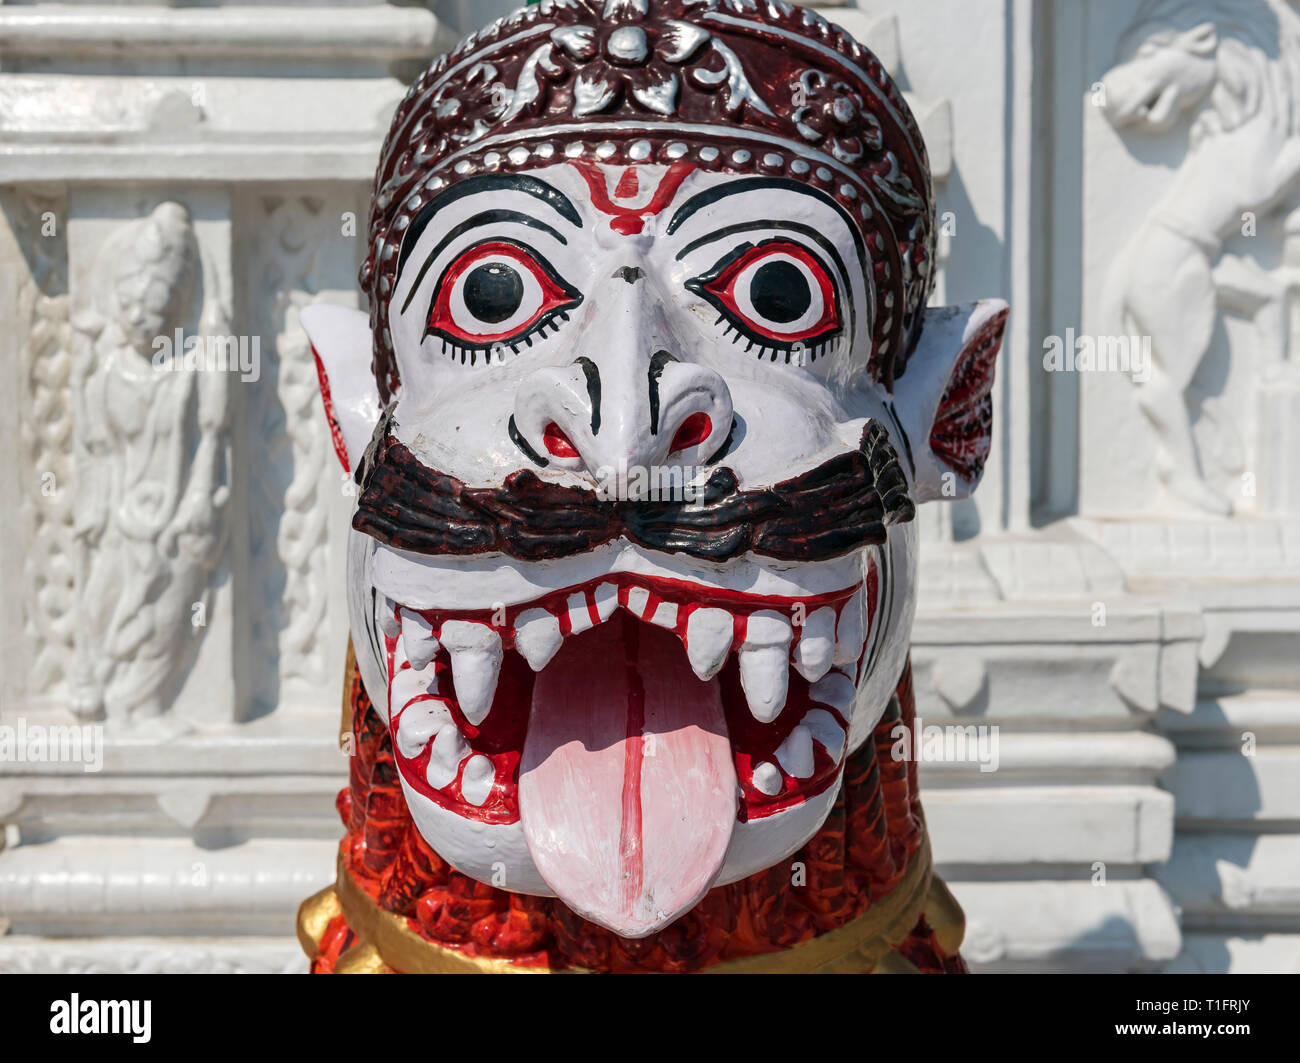 Deity statue at Shree Neelachala Seva Sangha Temple, Hauz Khas, South Delhi, India Stock Photo